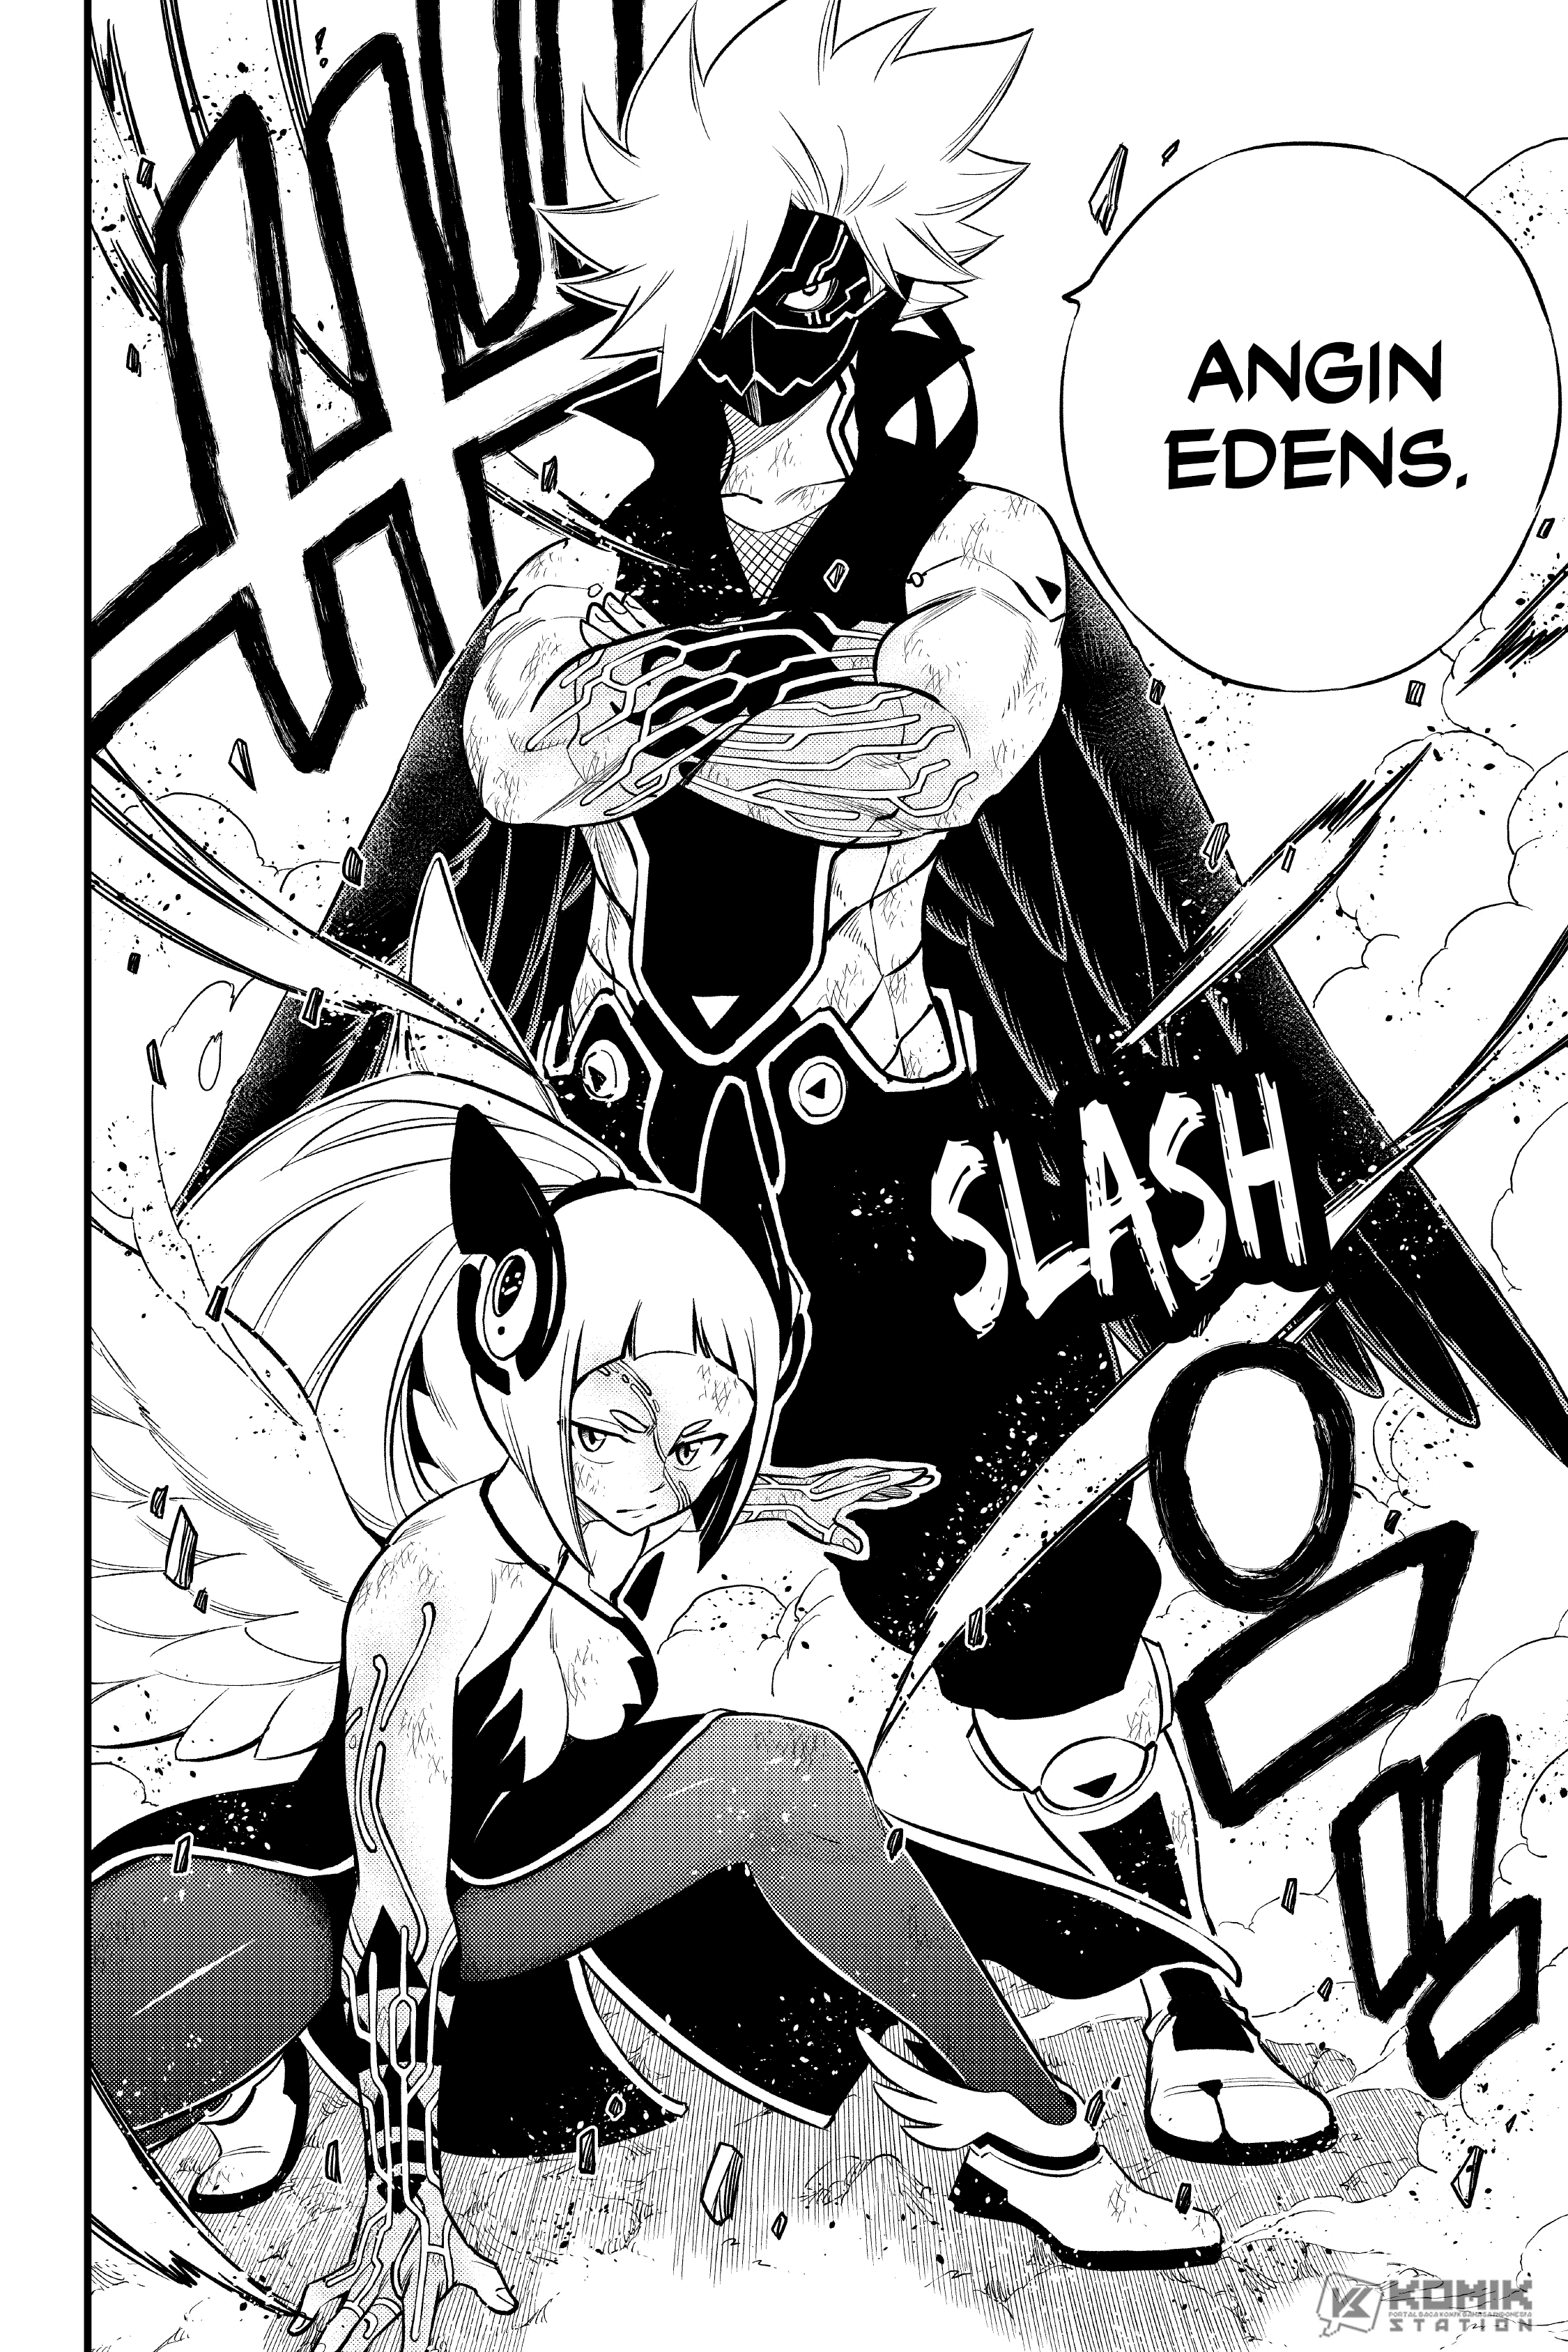 Eden’s Zero Chapter 155